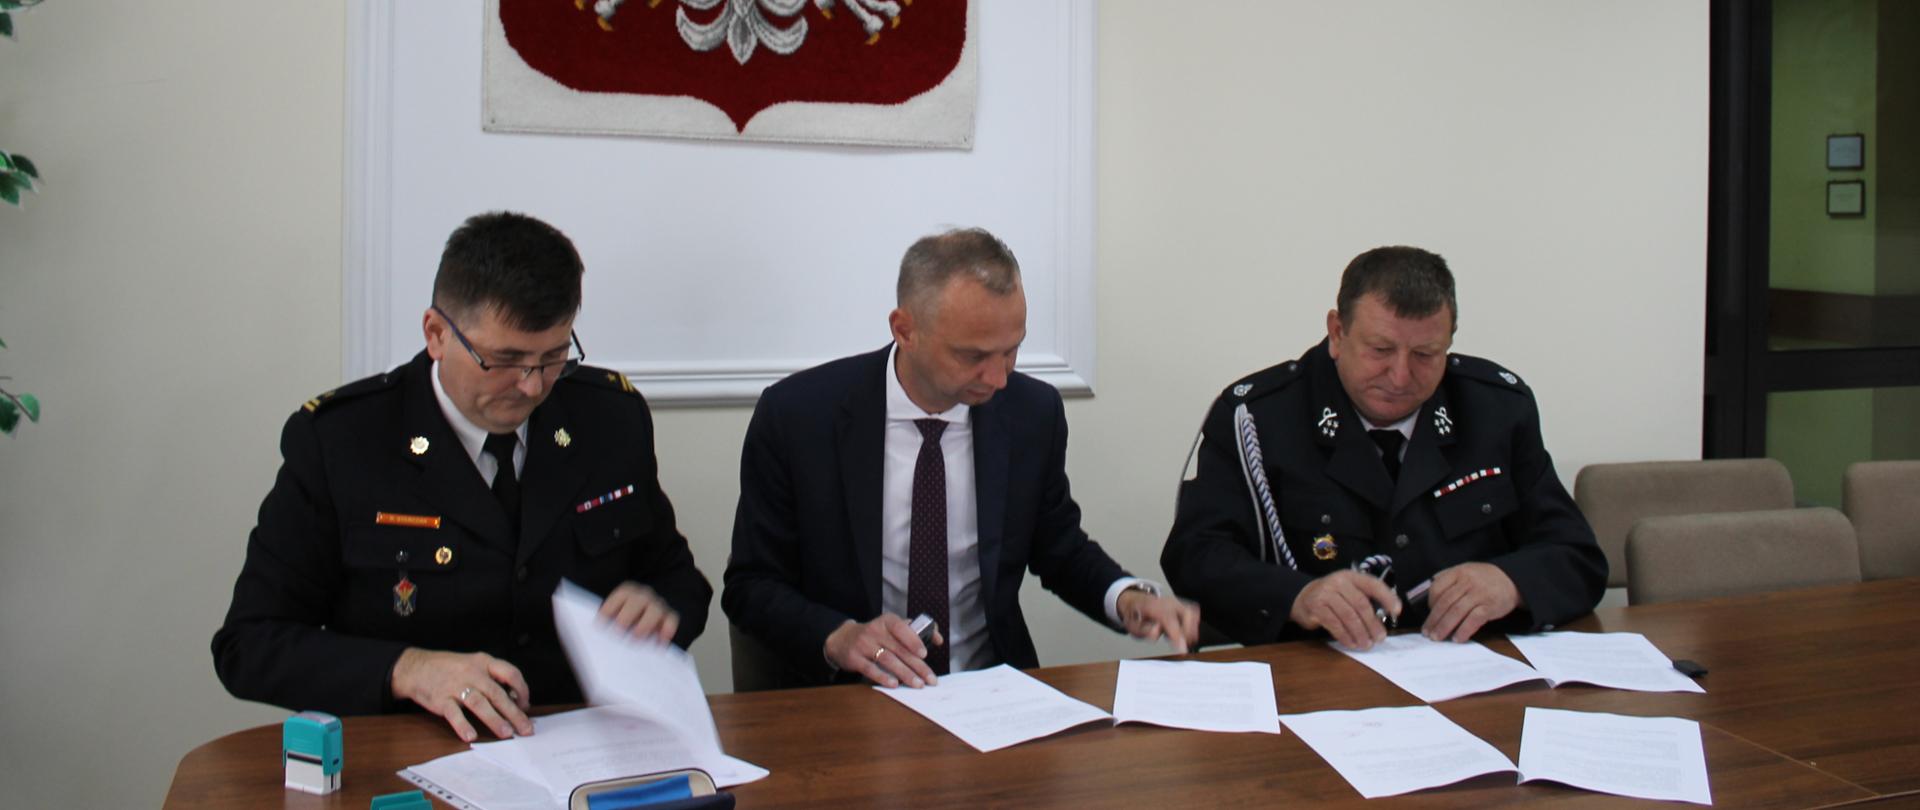 Podpisanie porozumienia OSP Królewiec